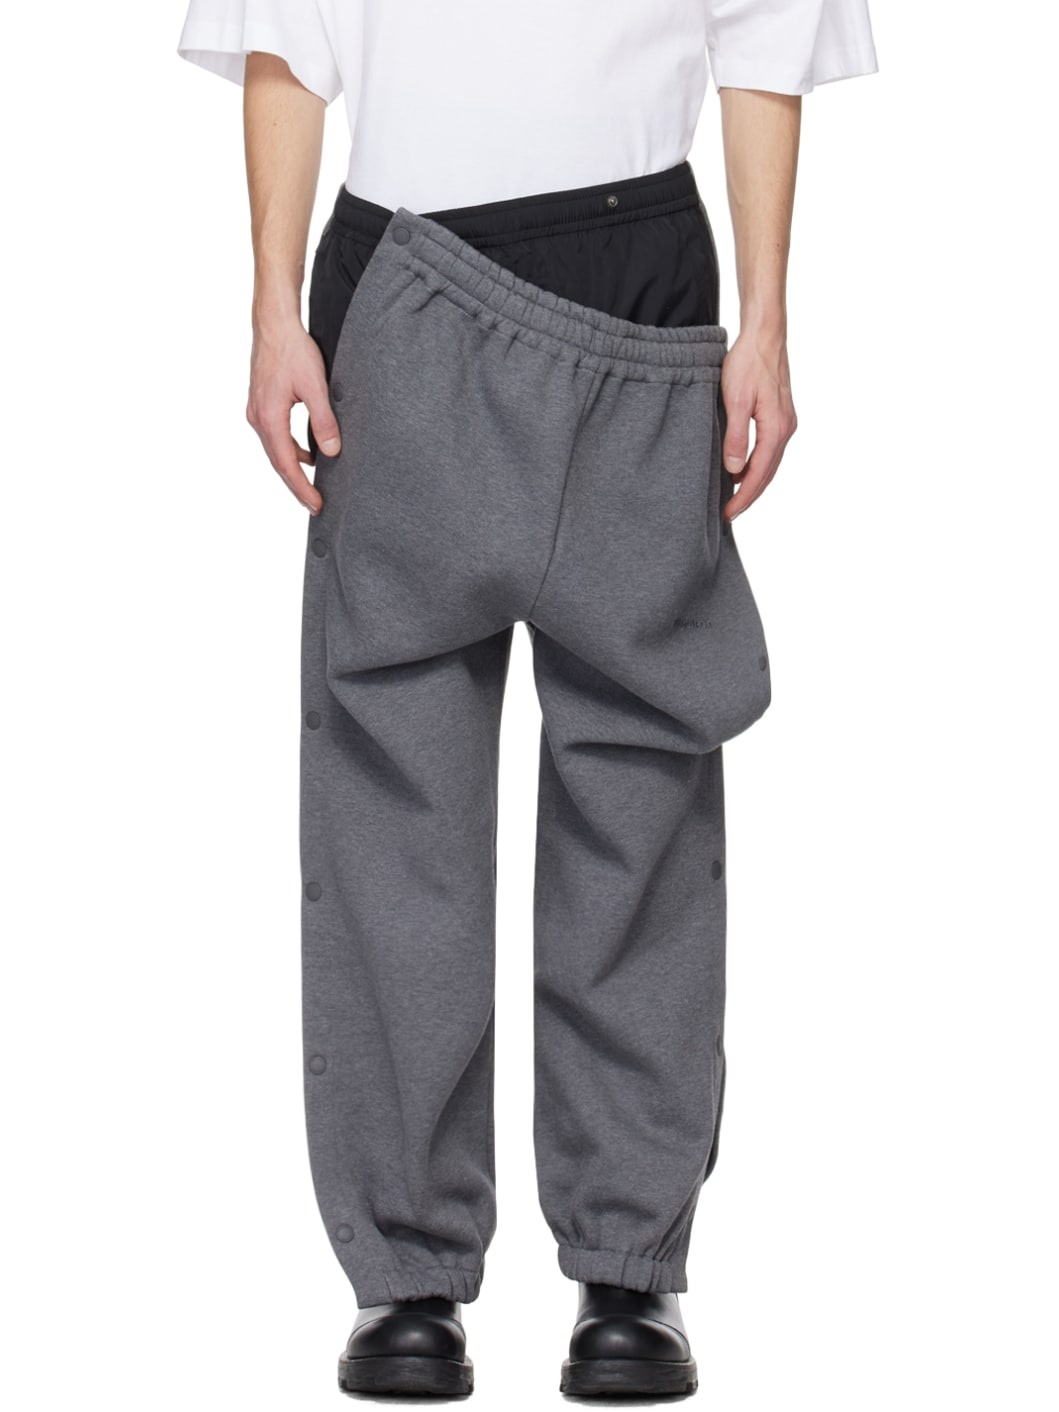 Gray Layered Sweatpants - 1